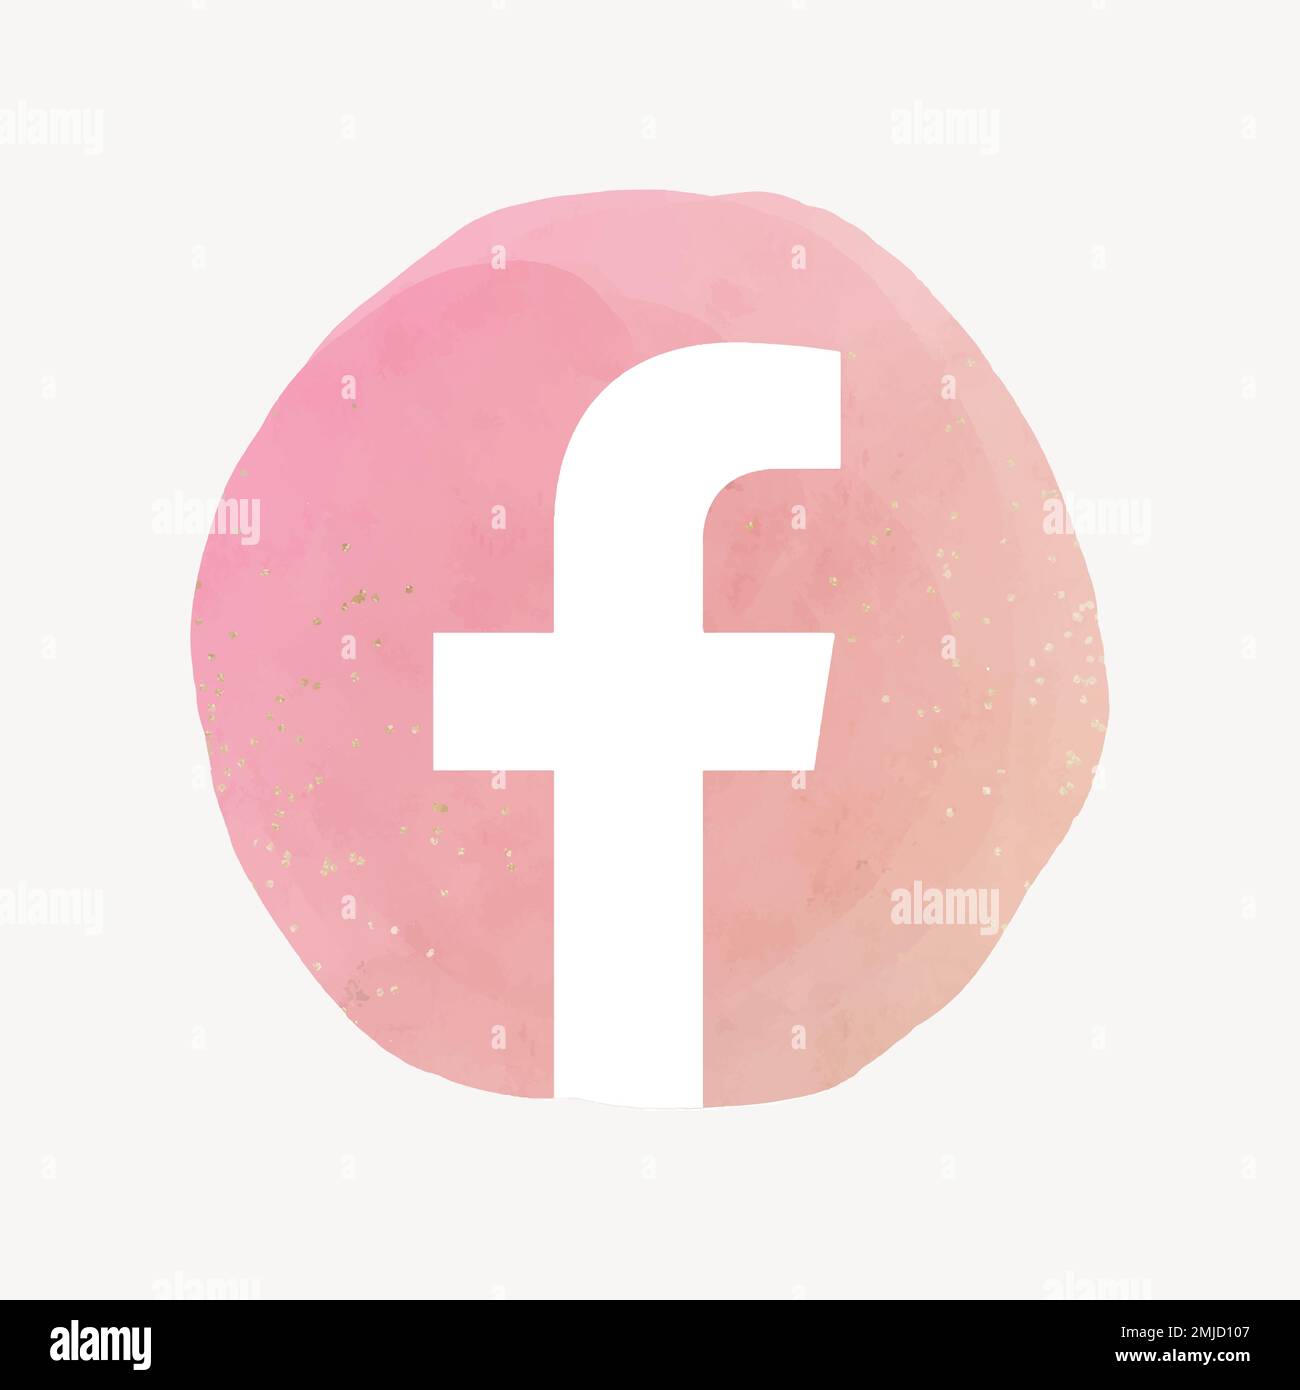 facebook app icon vector